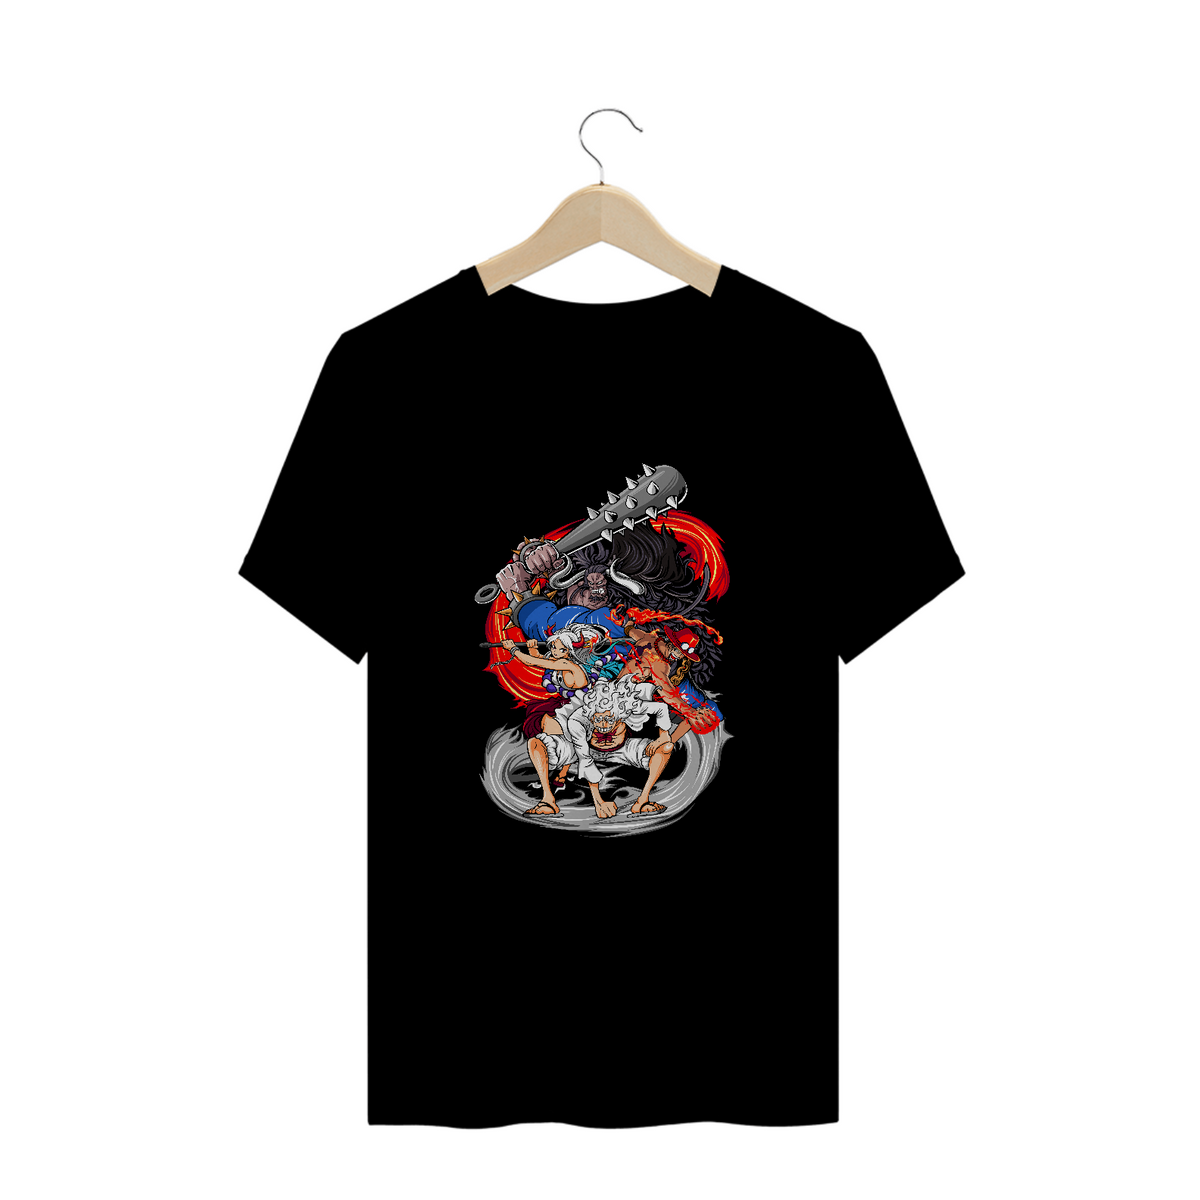 Nome do produto: Camisa One Piece XIII